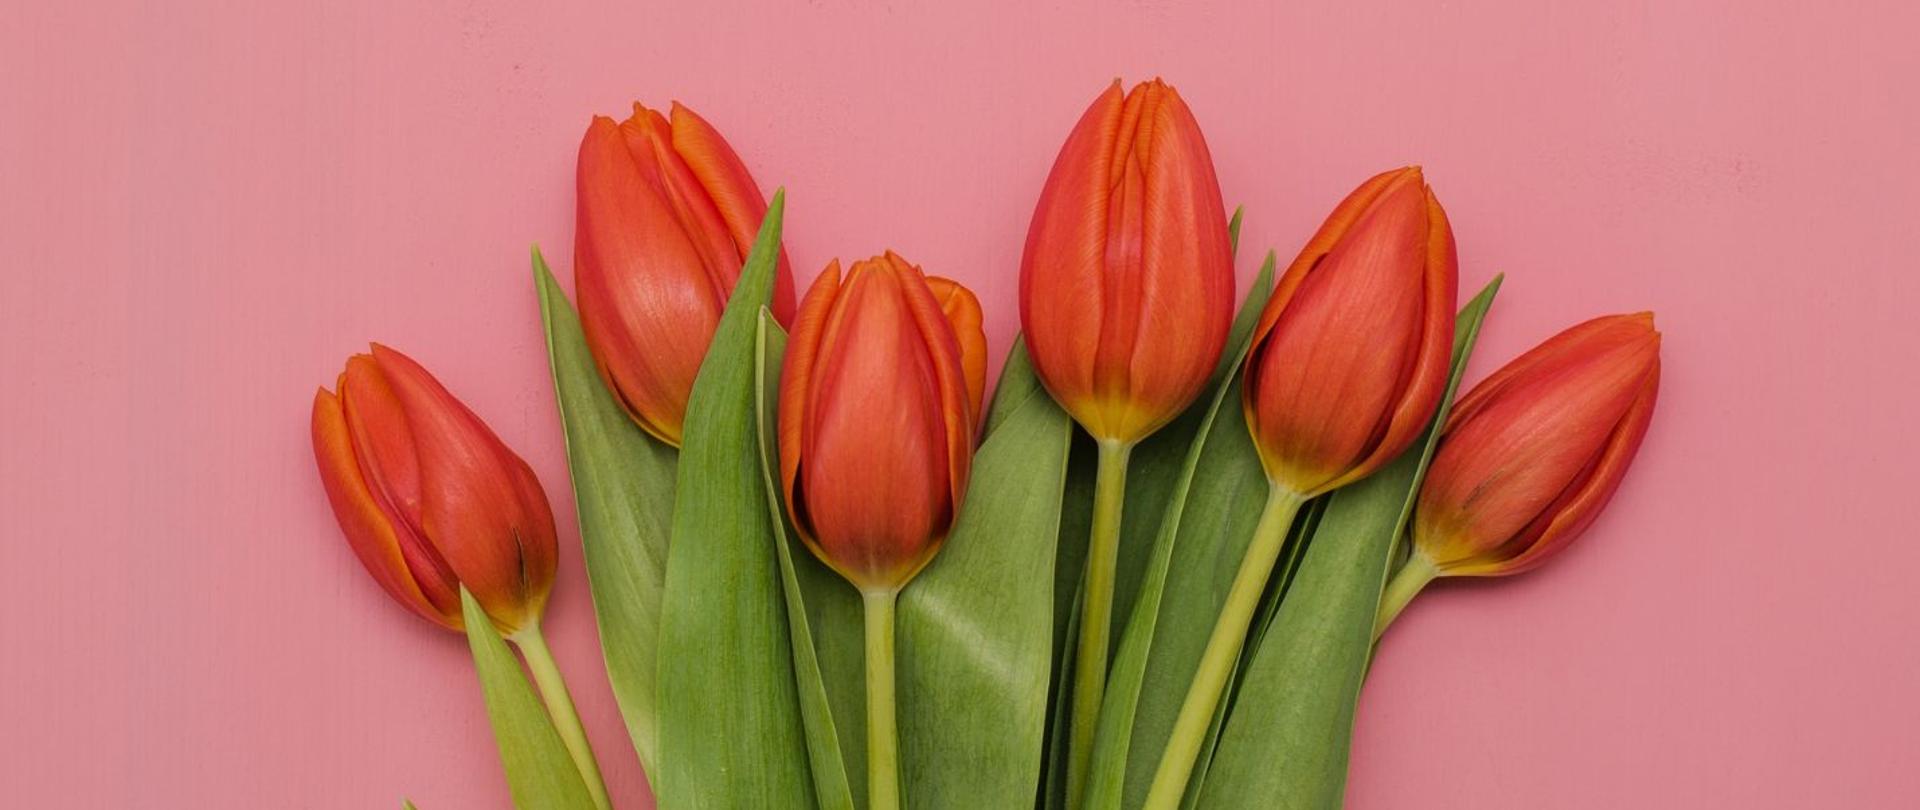 Plakat w kolorze różowym, na dole czerwone tulipany, w centrum biały napis: Dzień kobiet, koncert, marzec 7, 17:30, sala koncertowa PSM, wstęp wolny. 